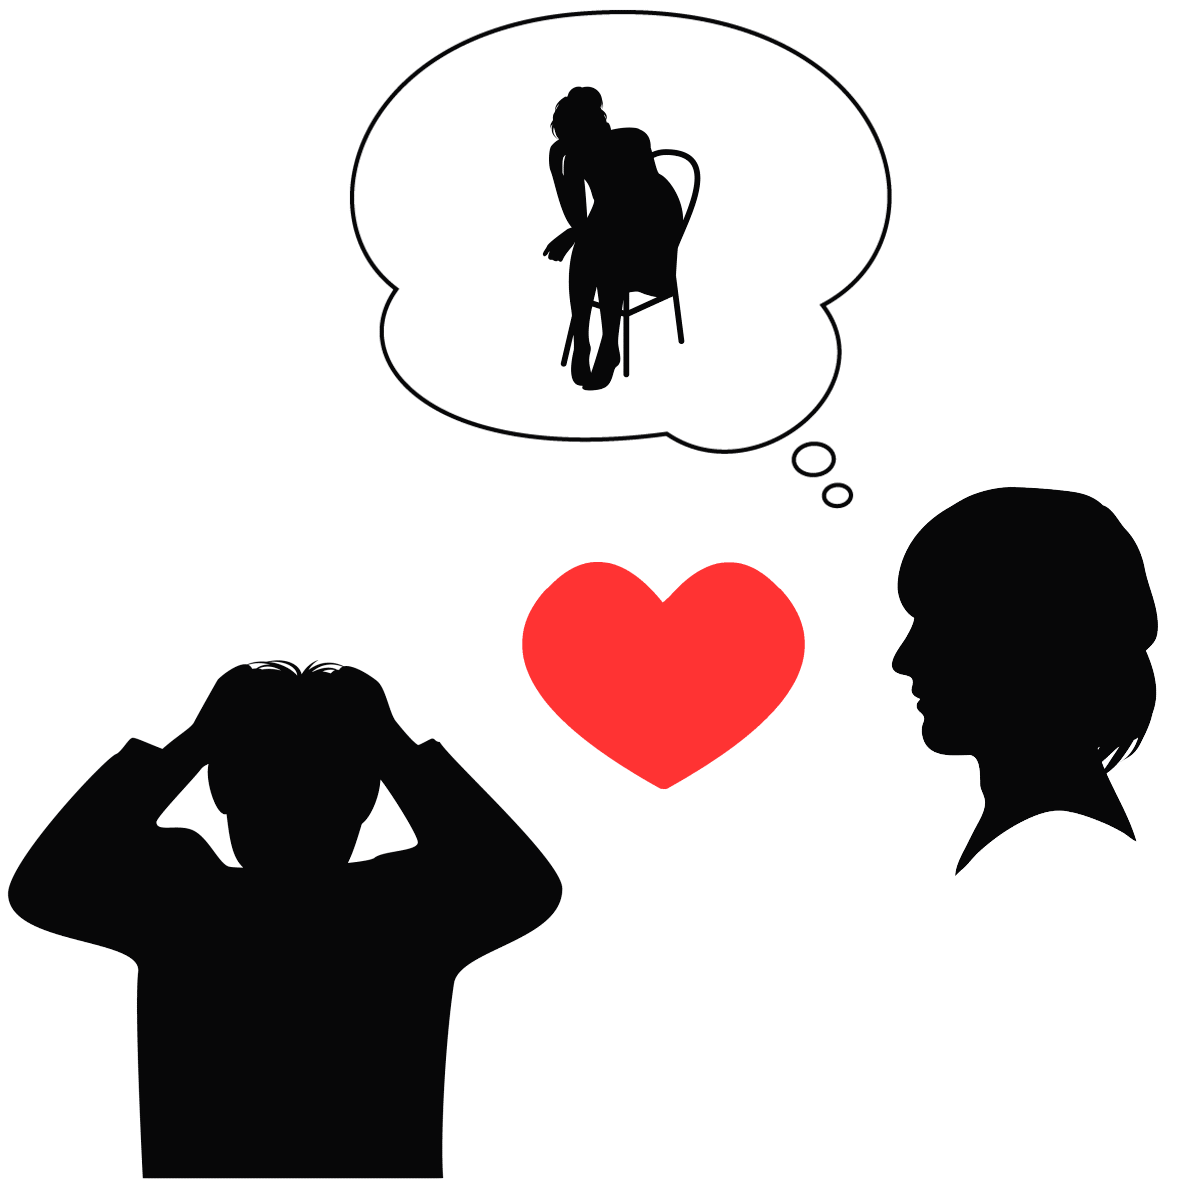 アダルトチルドレン_イネイブラータイプの恋愛思考パターンは両親との関係性の影響を受けている様子を表すイラスト